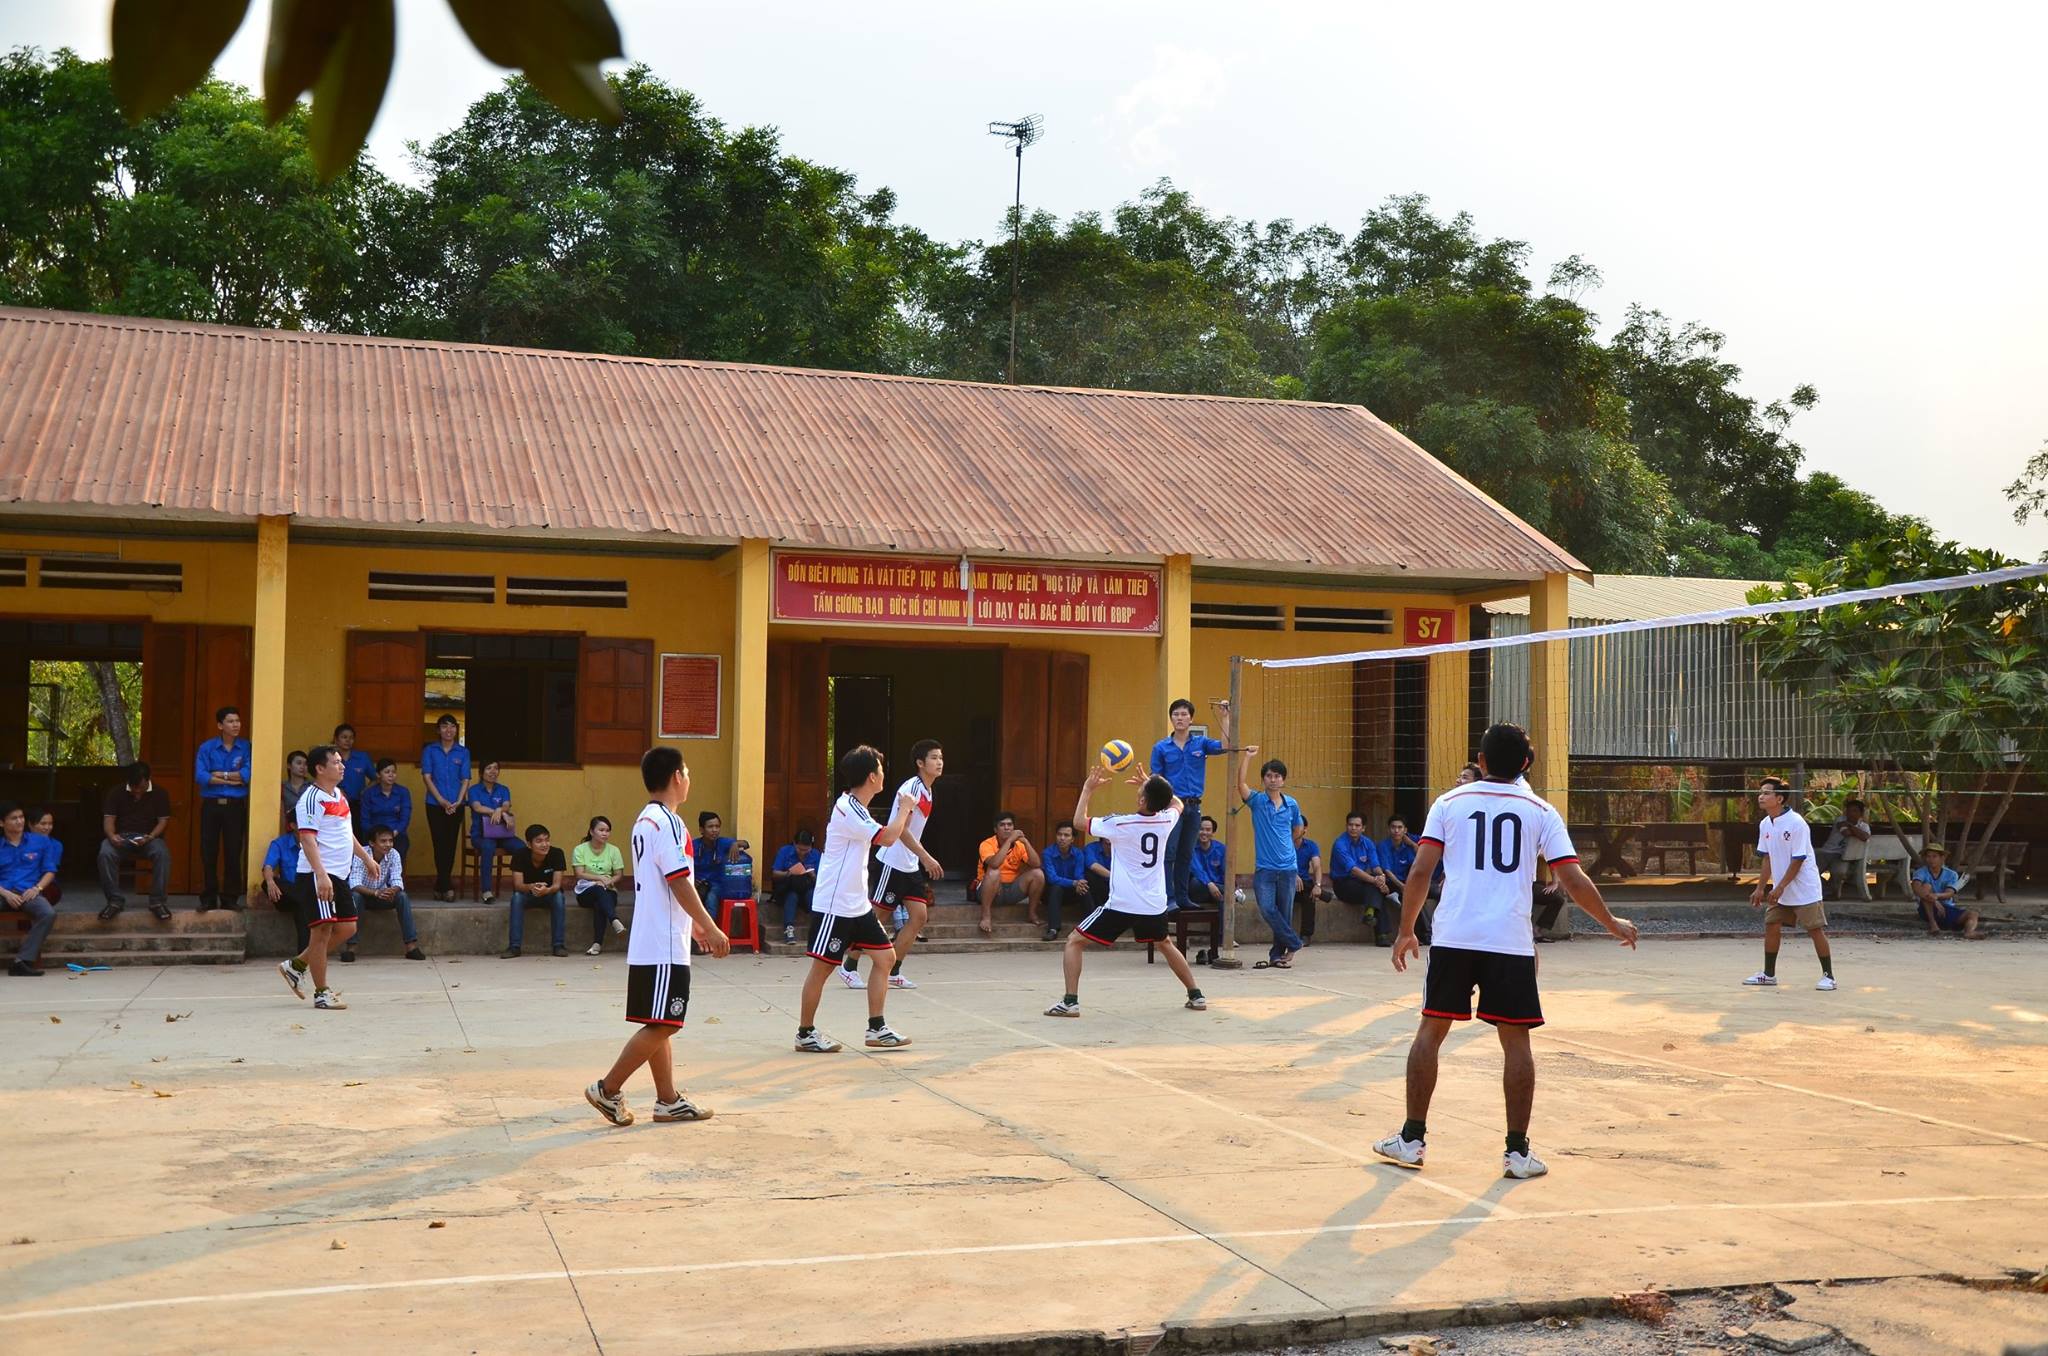 Giao lưu các hoạt động thể thao với Đồn biên phòng Tà Vát tại Biên giới huyện Lộc Ninh tỉnh Bình Phước